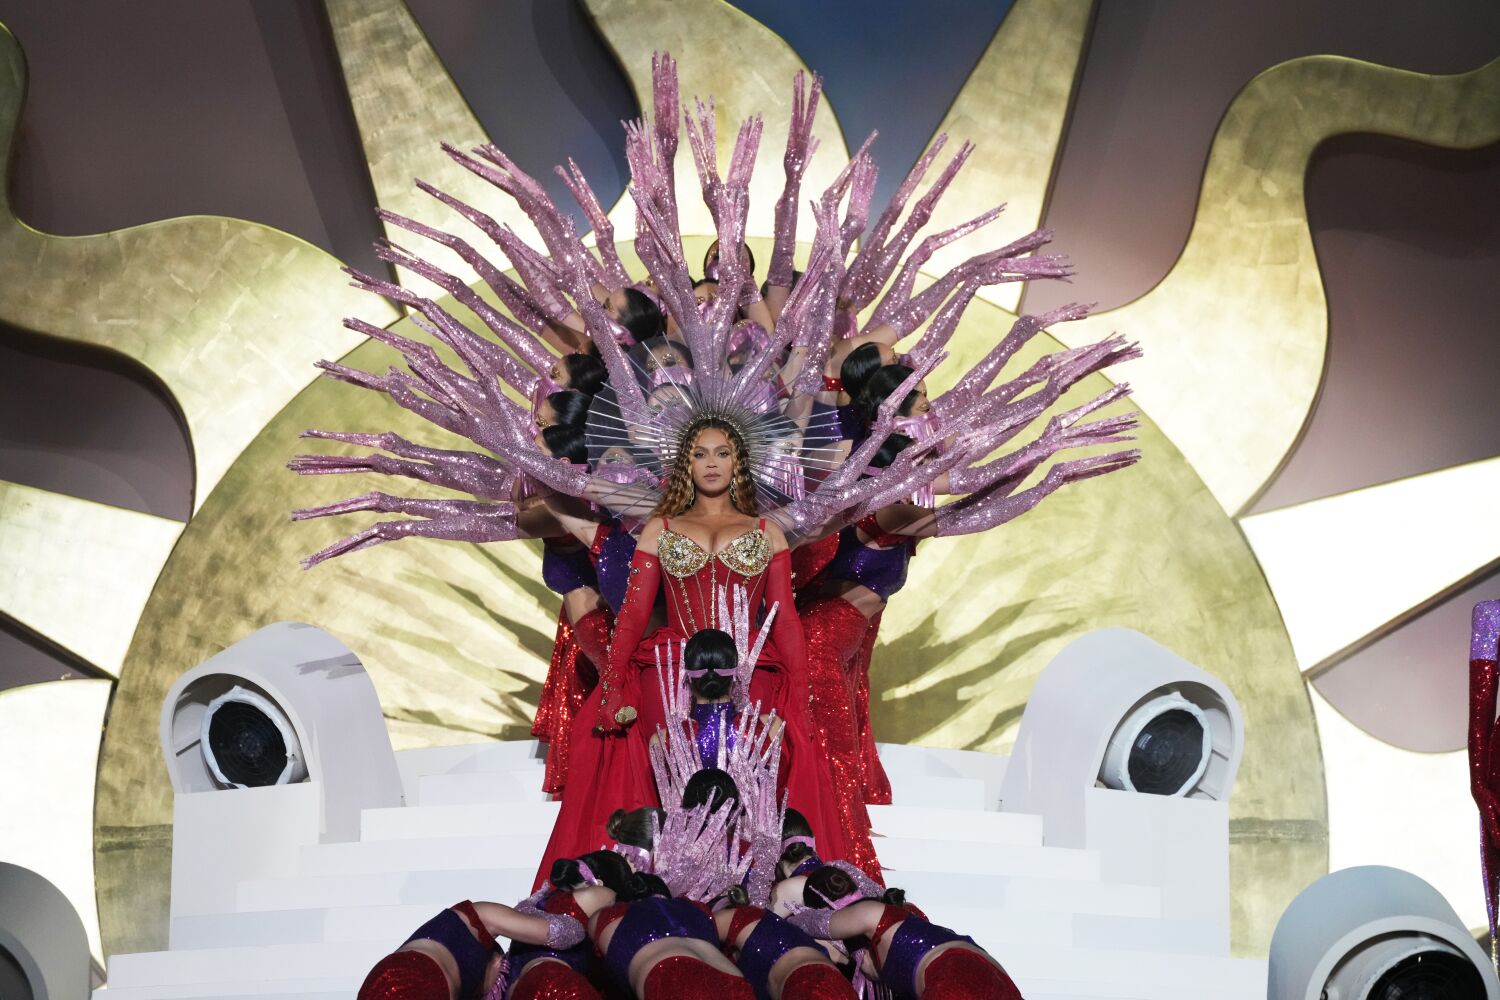 Beyoncé plays her first concert since 2018 at Dubai resort opening